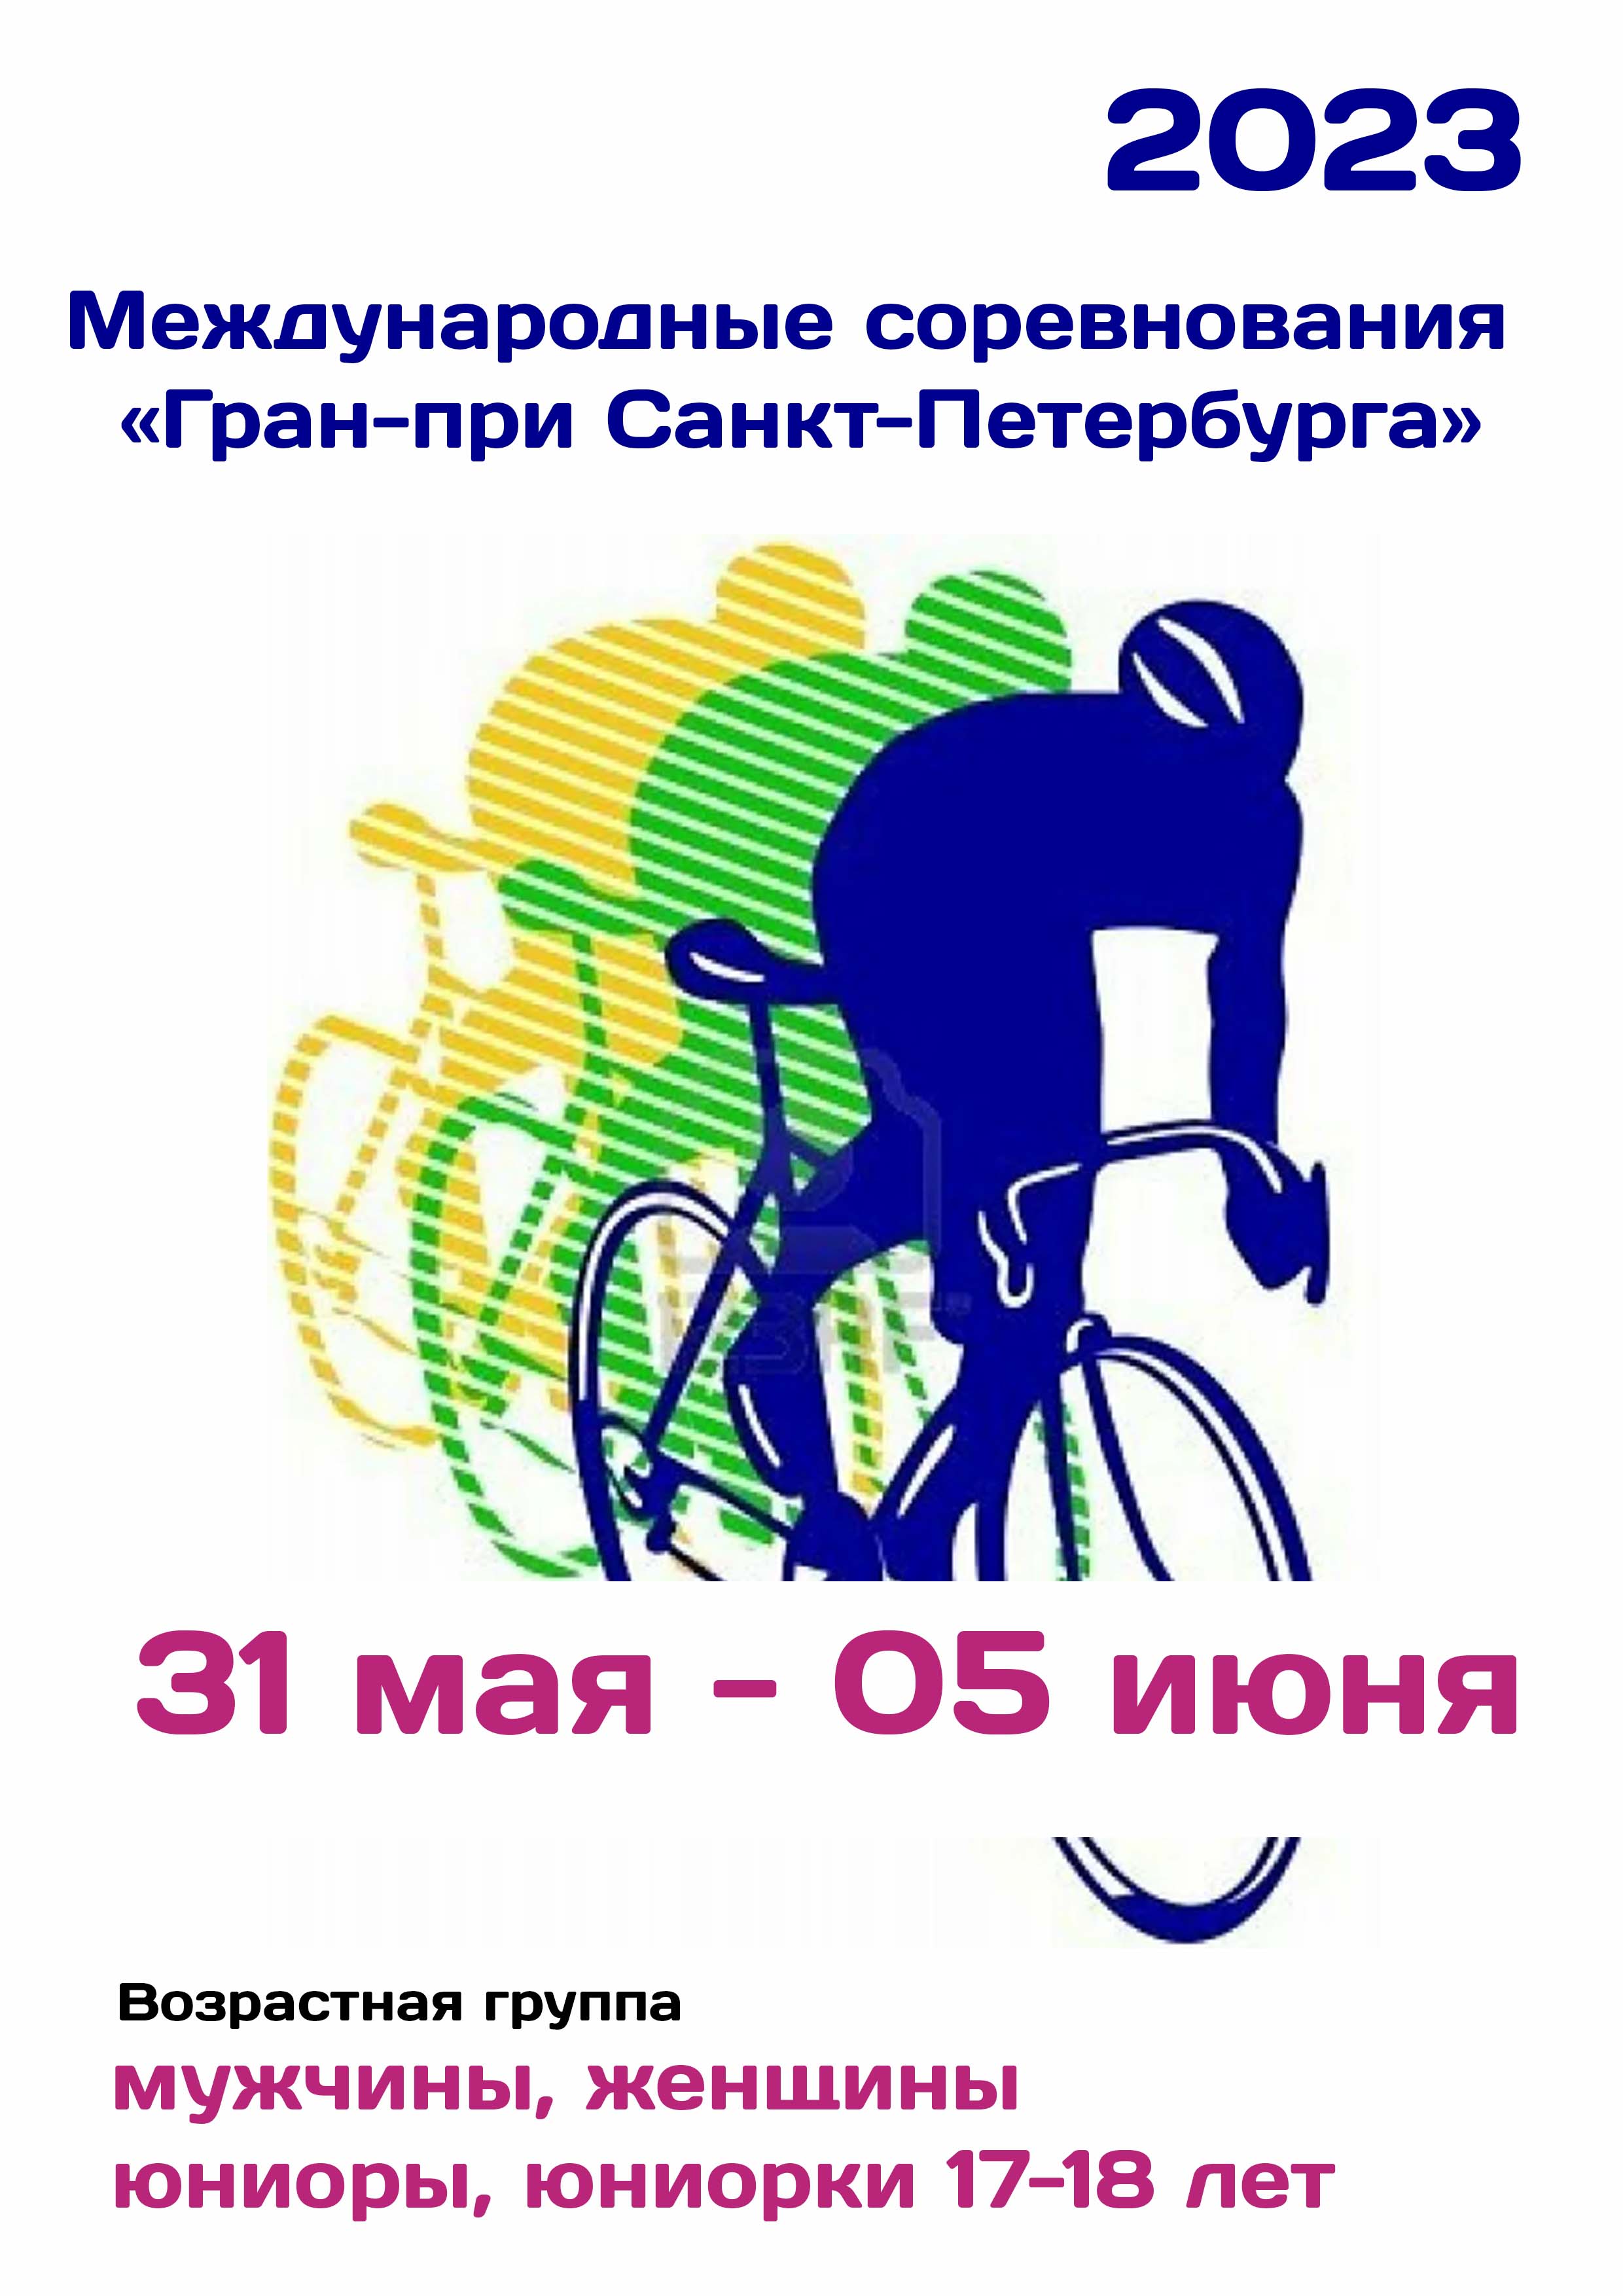 Международные соревнования «Гран-при Санкт-Петербурга»  по велоспорту 31  май
 2023  година
 